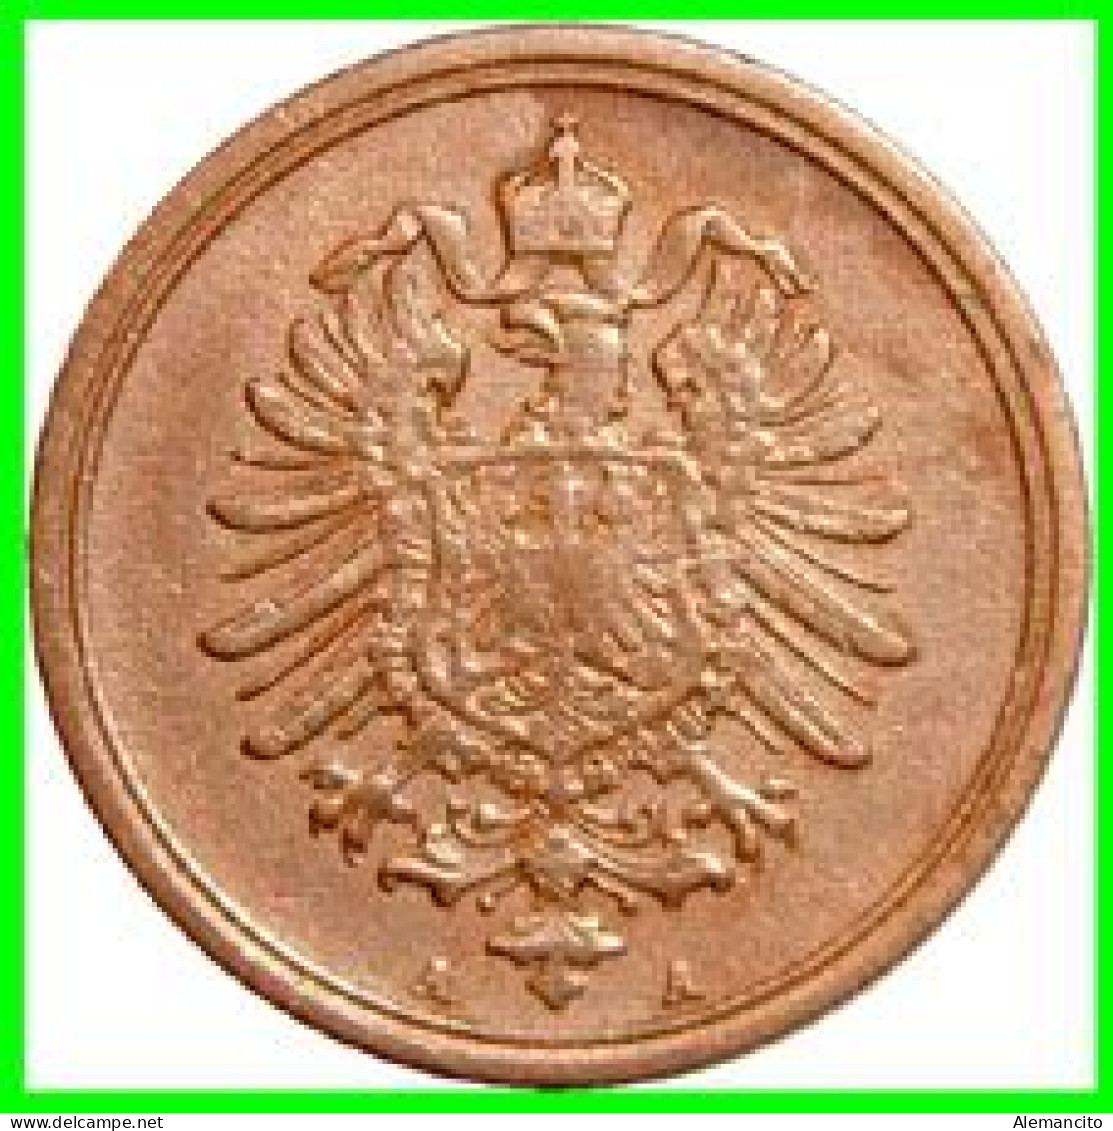 ALEMANIA – GERMANY - IMPERIO MONEDA DE COBRE DIAMETRO 17.5 Mm. DEL AÑO 1876 – CECA-A- KM-1  GOBERNANTE: GUILLERMO I - 1 Pfennig